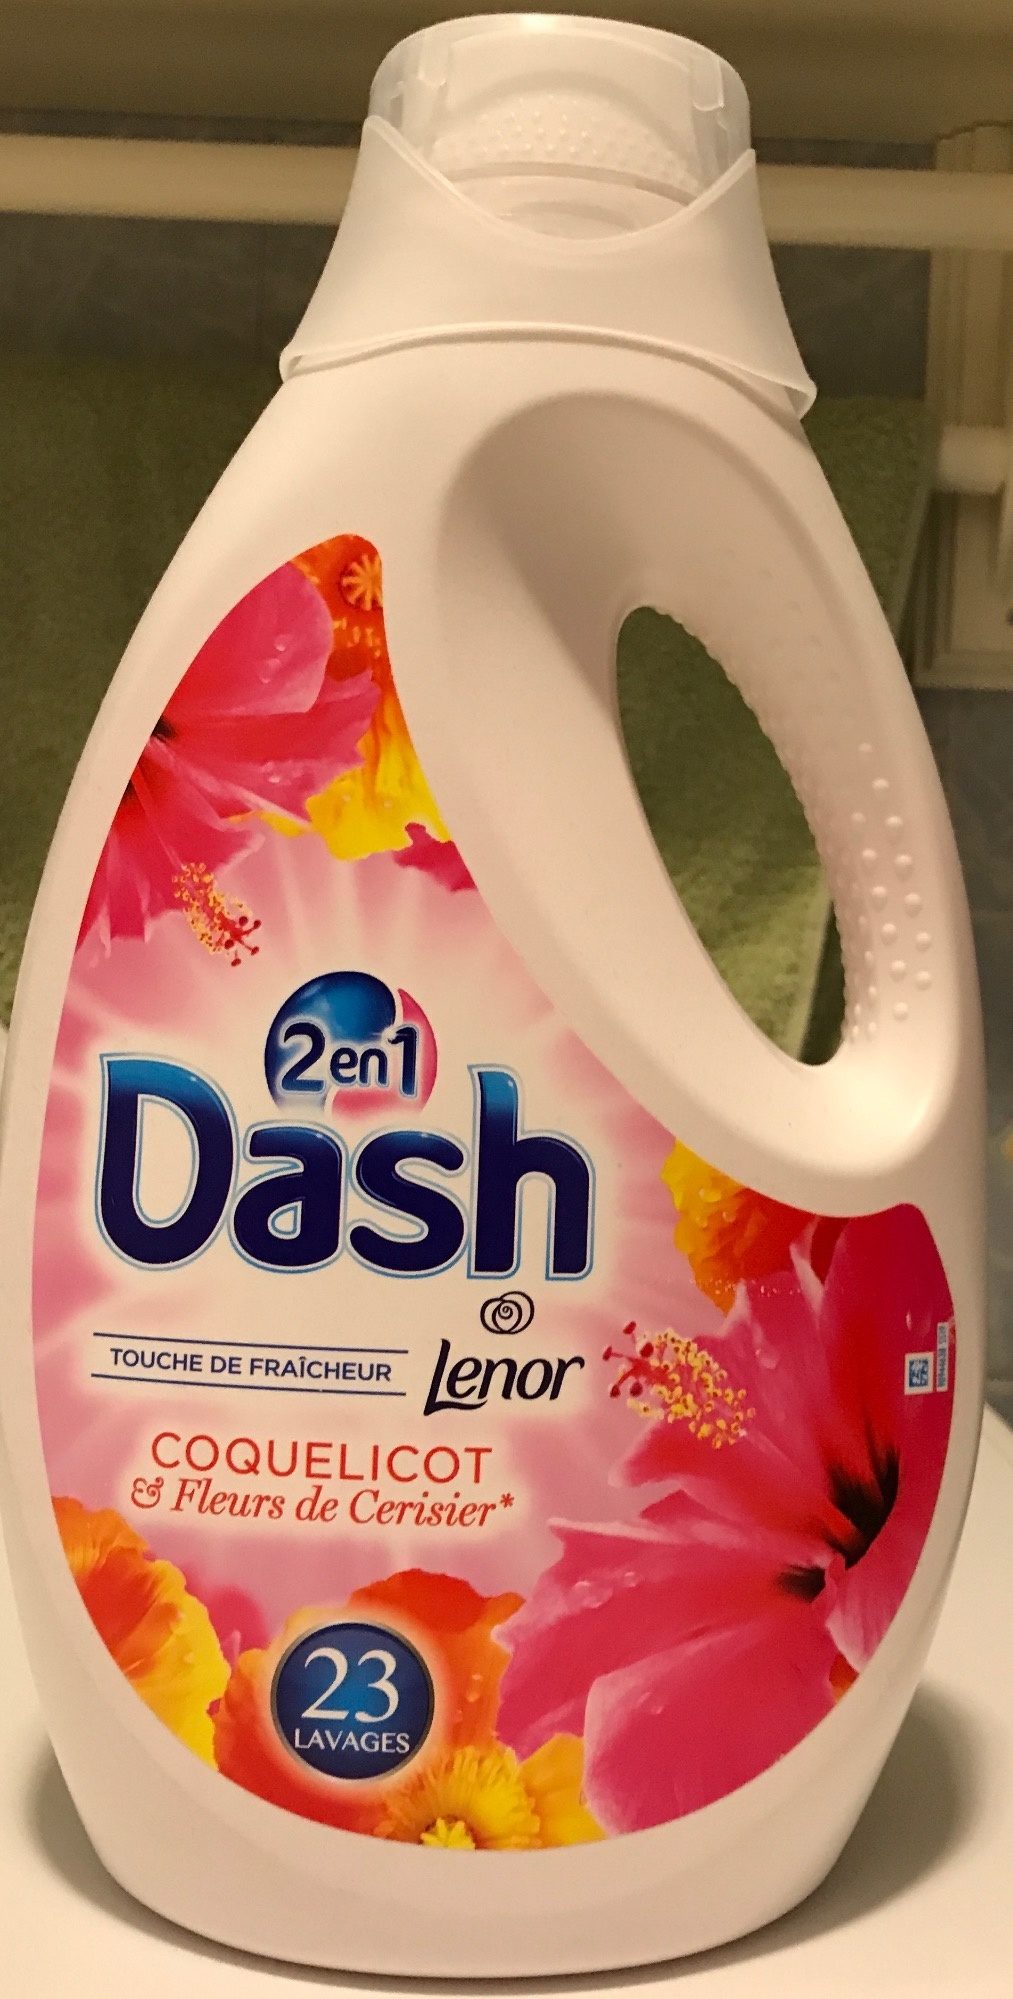 Dash 2 en 1 Touche de Fraîcheur Coquelicot & Fleurs de Cerisier - Product - fr